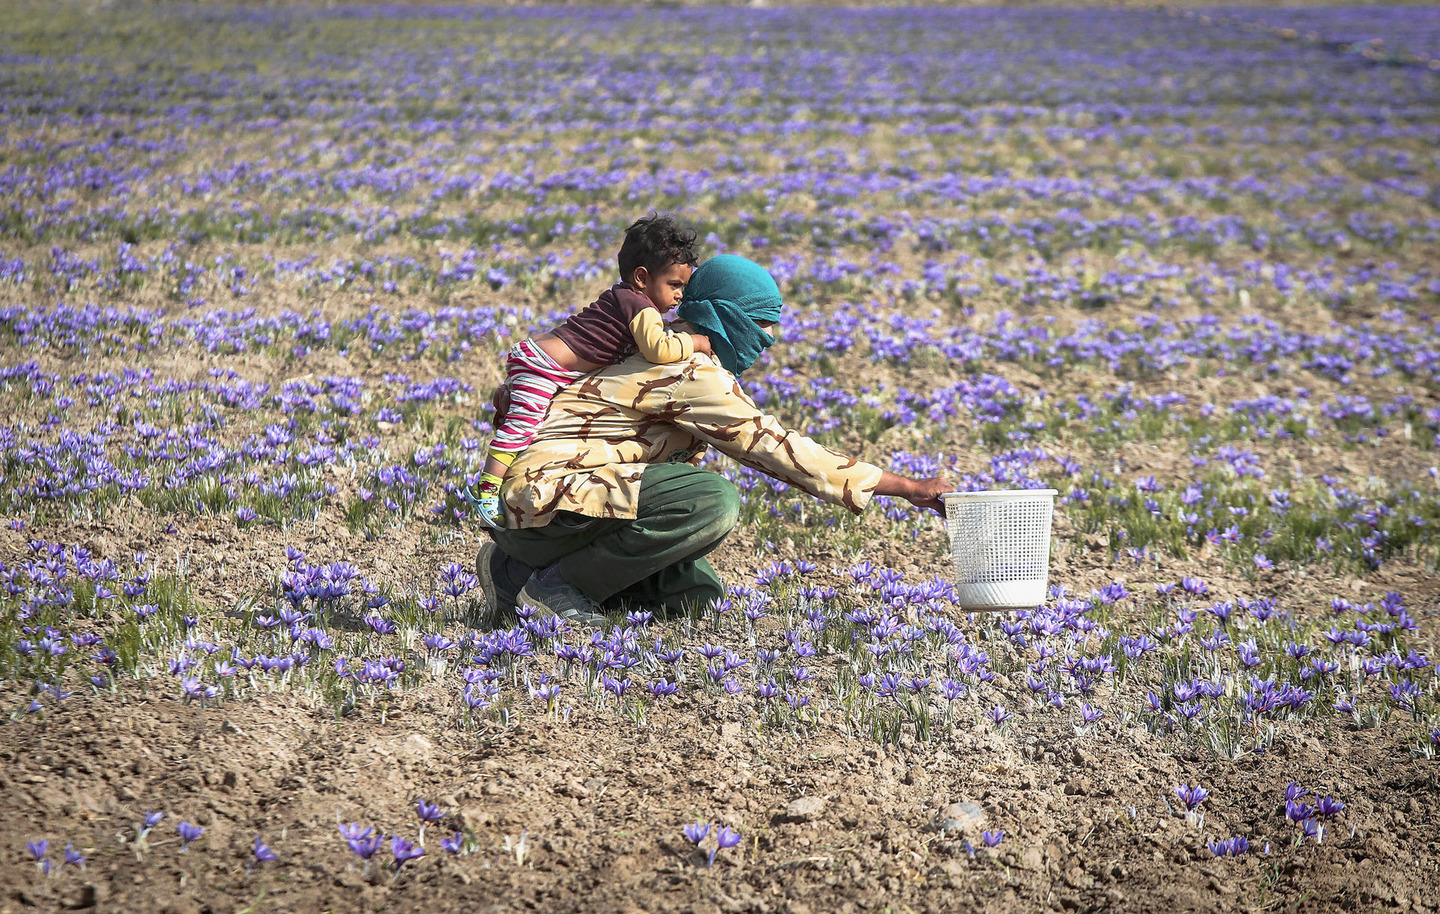 دنیا میں سب سے زیادہ زعفران ایران میں پیدا ہوتا ہے۔ یہ ملک دنیا کی 95 فیصد زعفران کی ضروریات پوری کرتا ہے